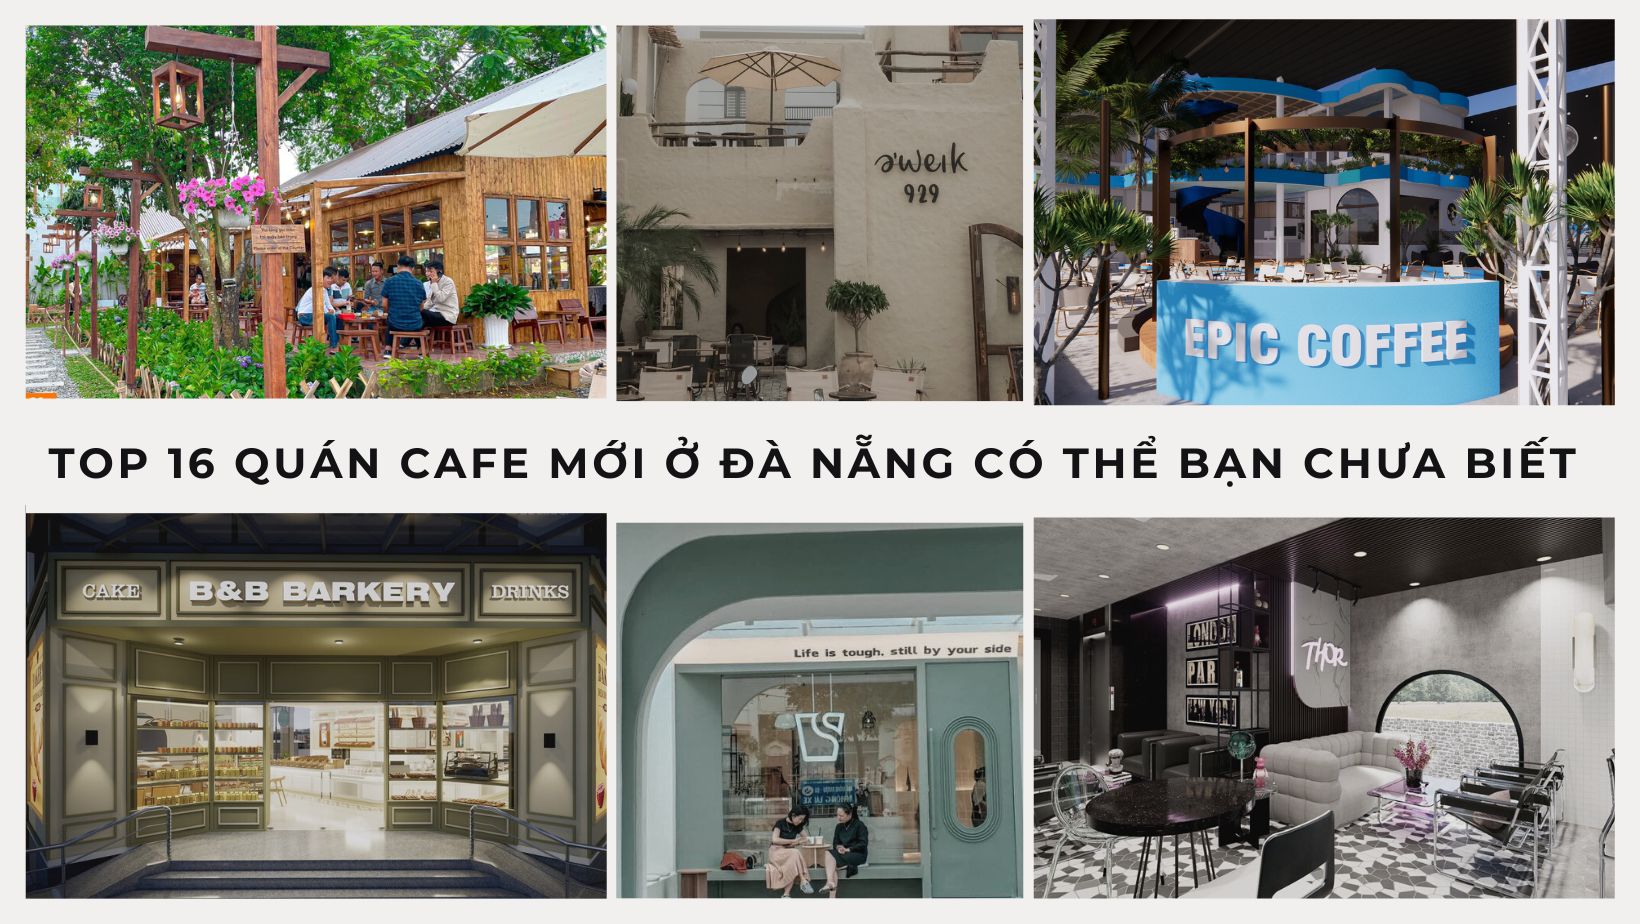 Top 11 địa chỉ mua đàn guitar ở Đà Nẵng giá rẻ, chất lượng